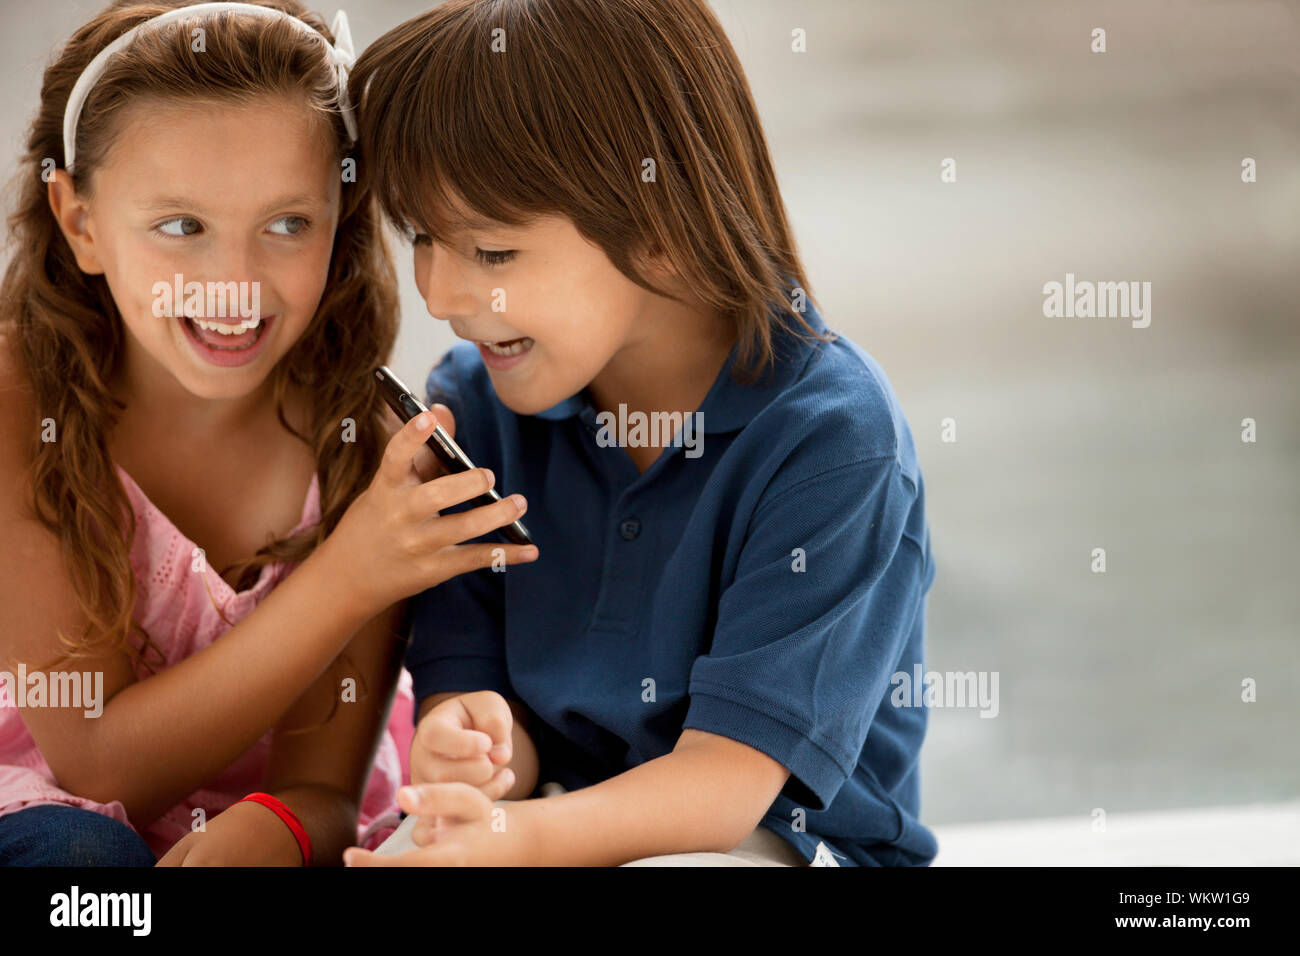 Un joven muchacho y muchacha sonrisa mischievously como se ven en un teléfono móvil. Foto de stock